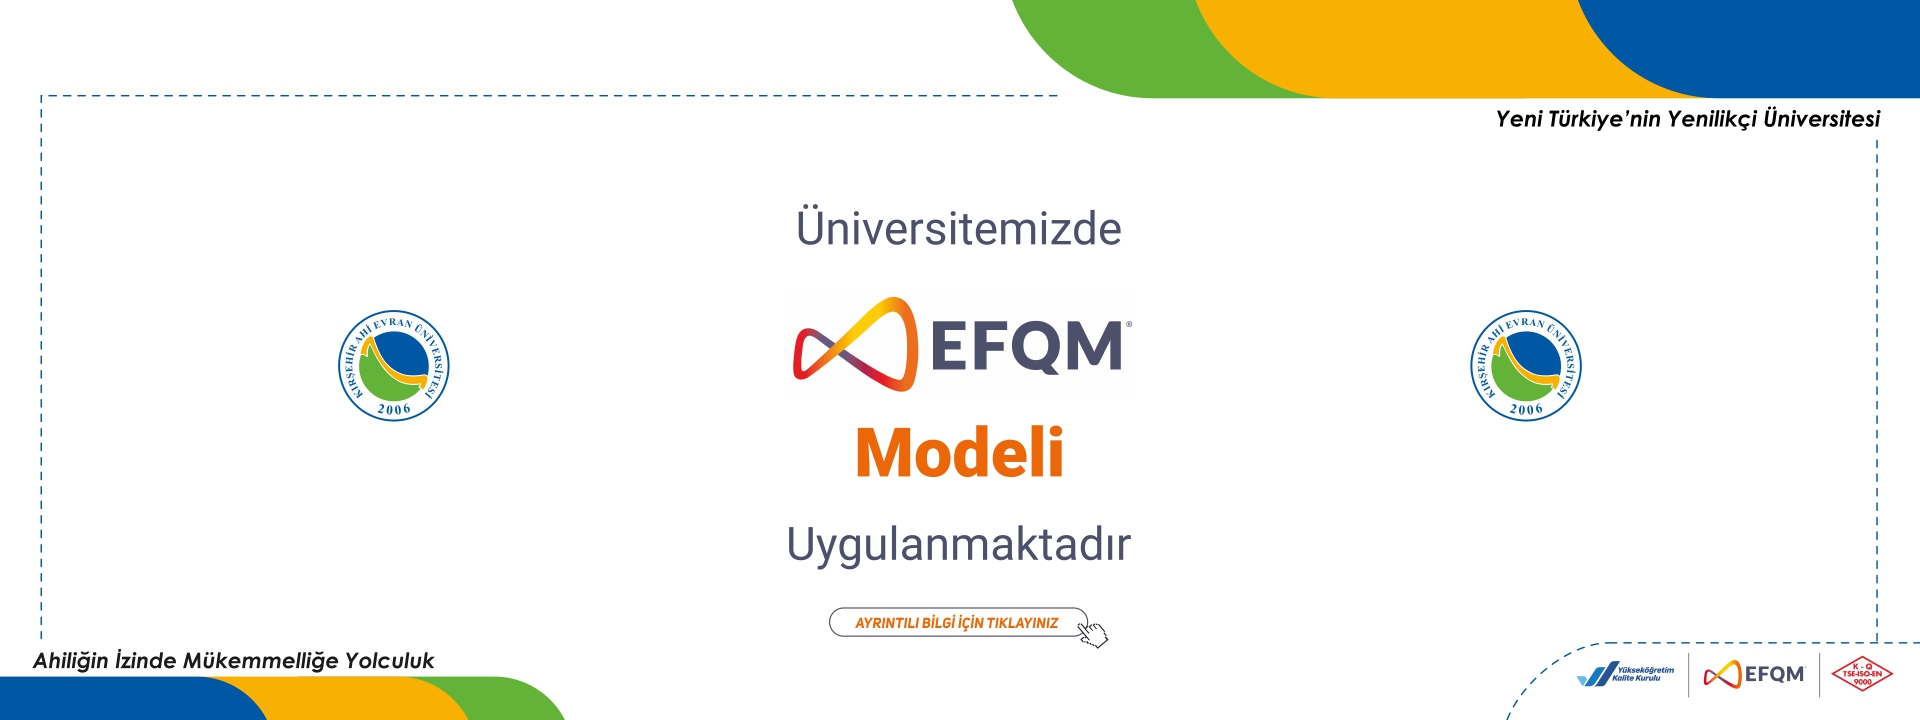 Niçin EFQM Modeli Uyguluyoruz?